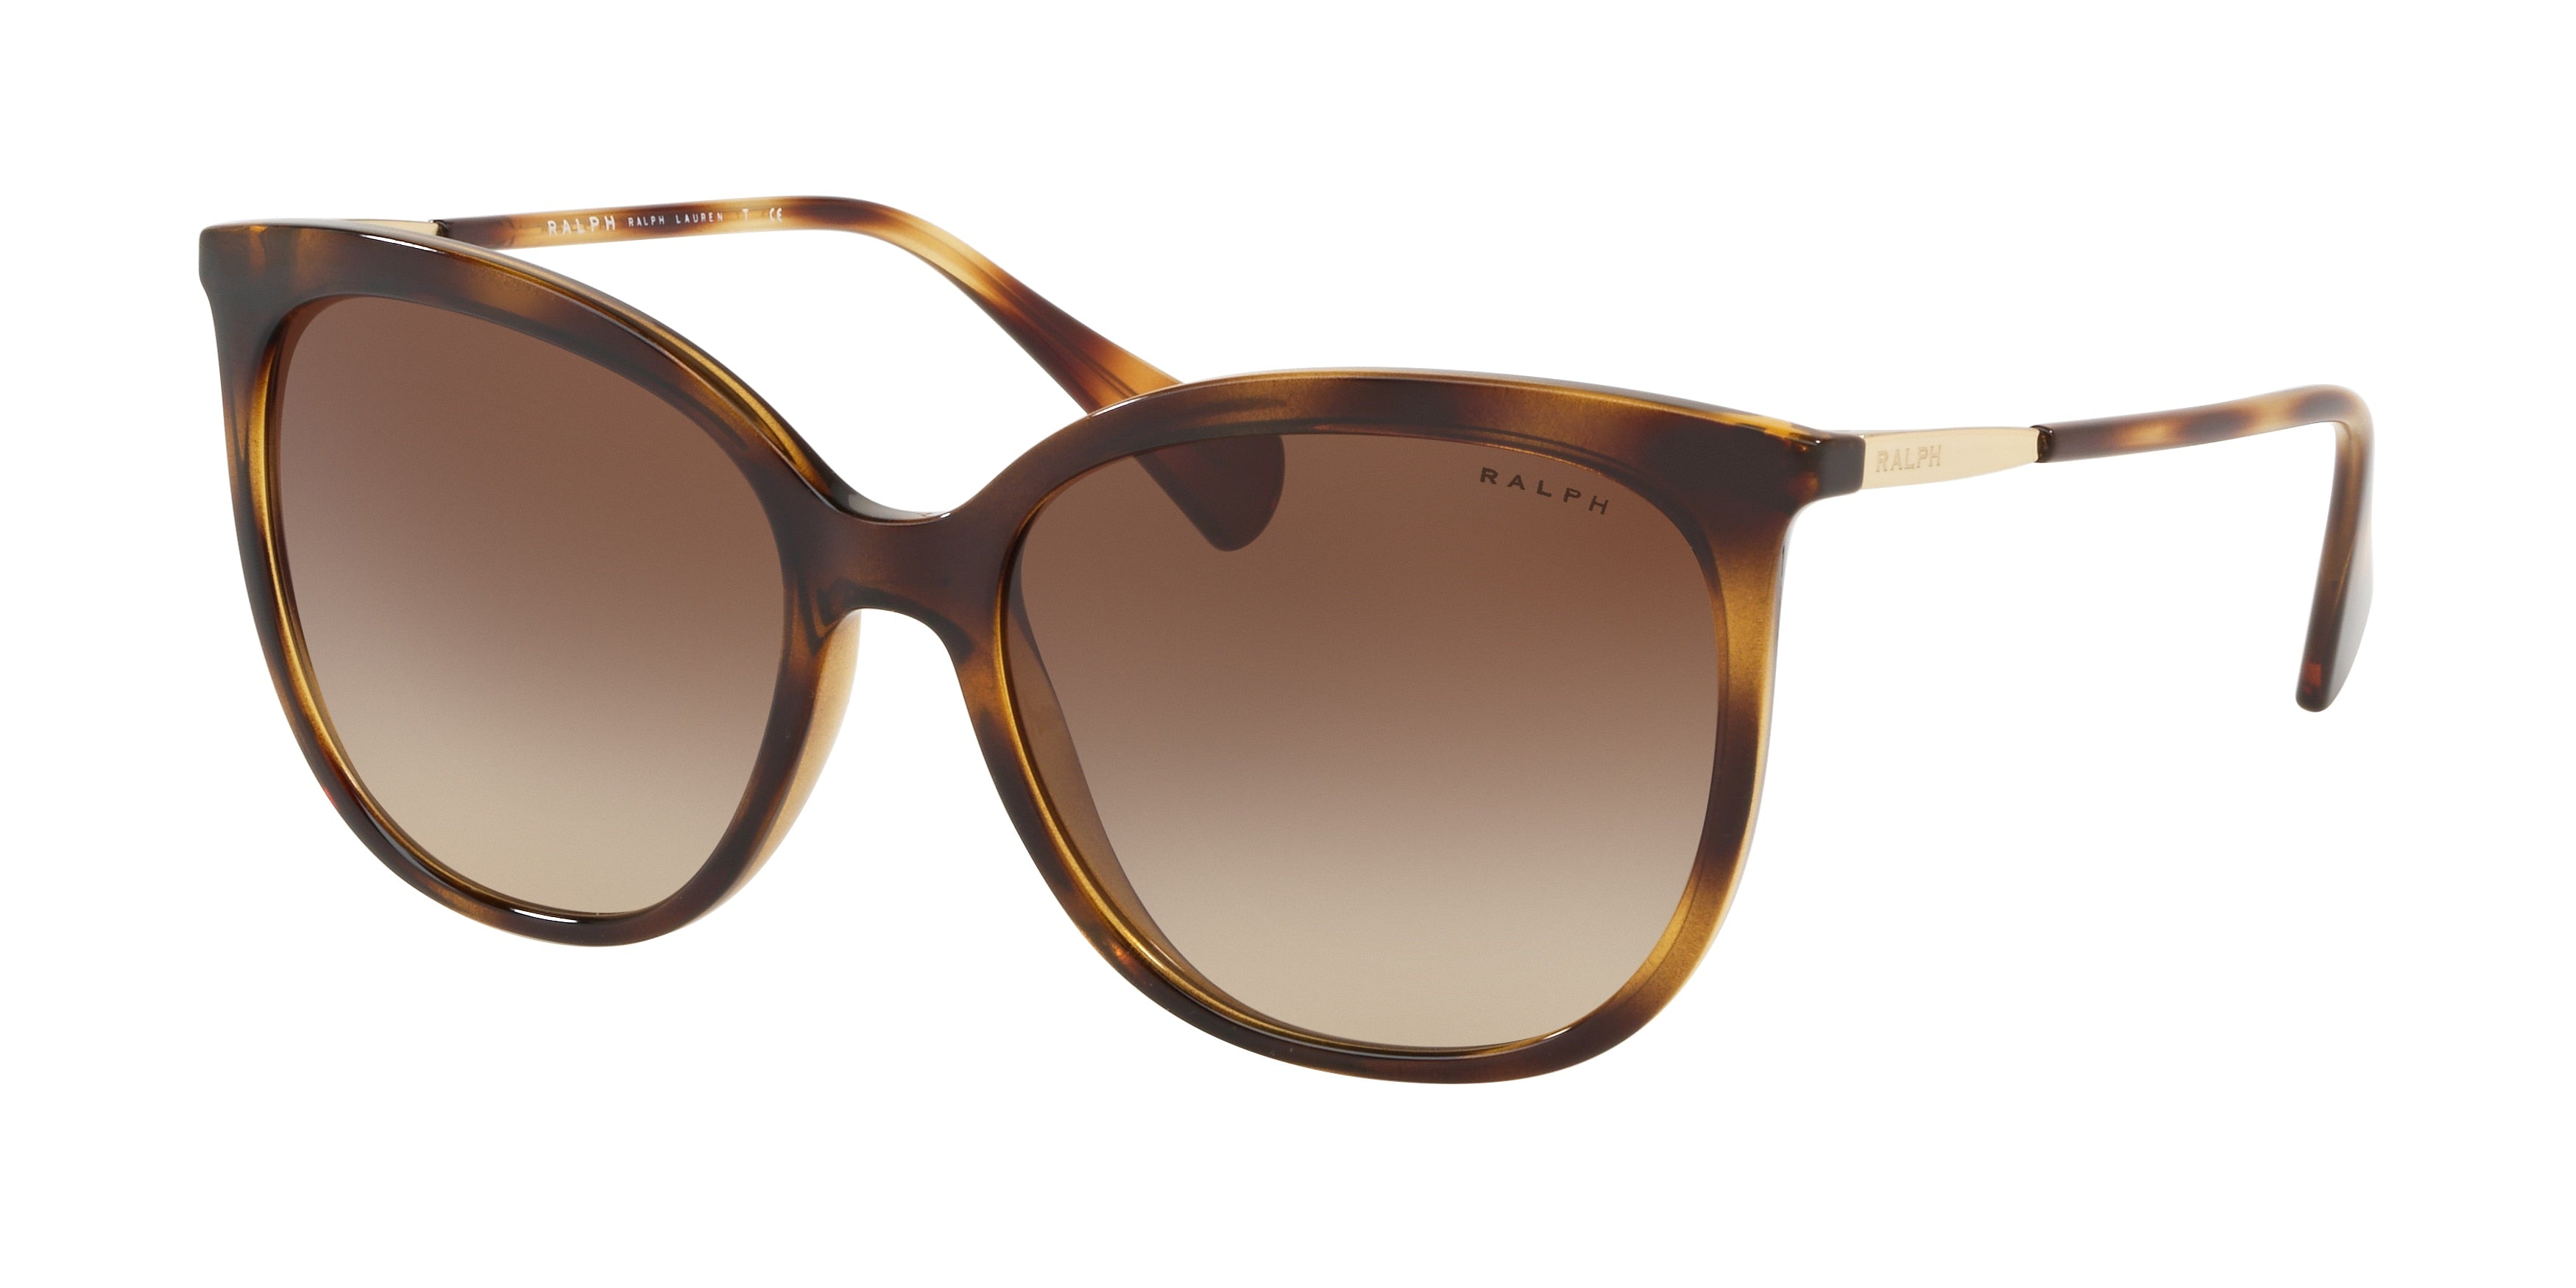 Ralph RA5248 Butterfly Sunglasses